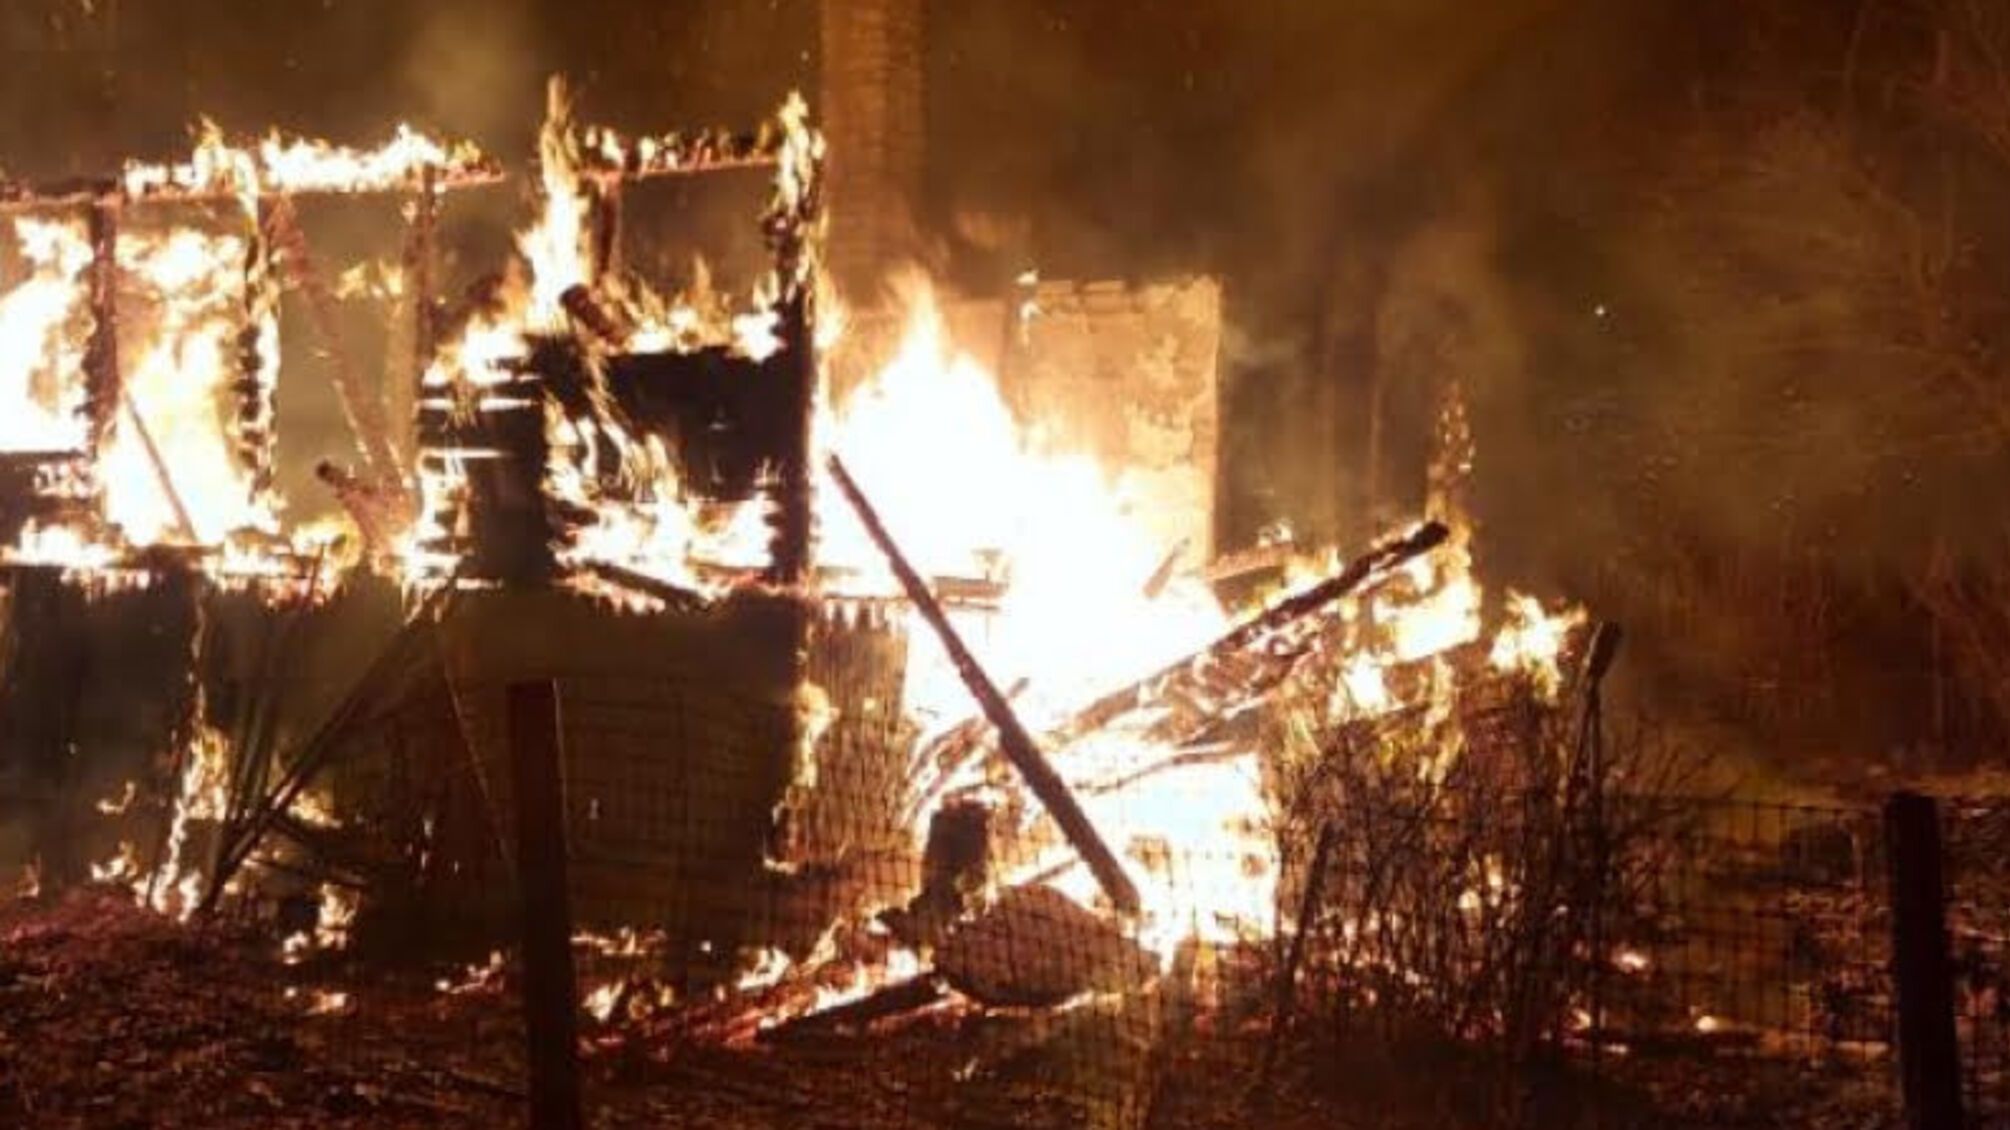 Київська область: внаслідок пожежі вогнем знищено житловий будинок, 1 людина загинула